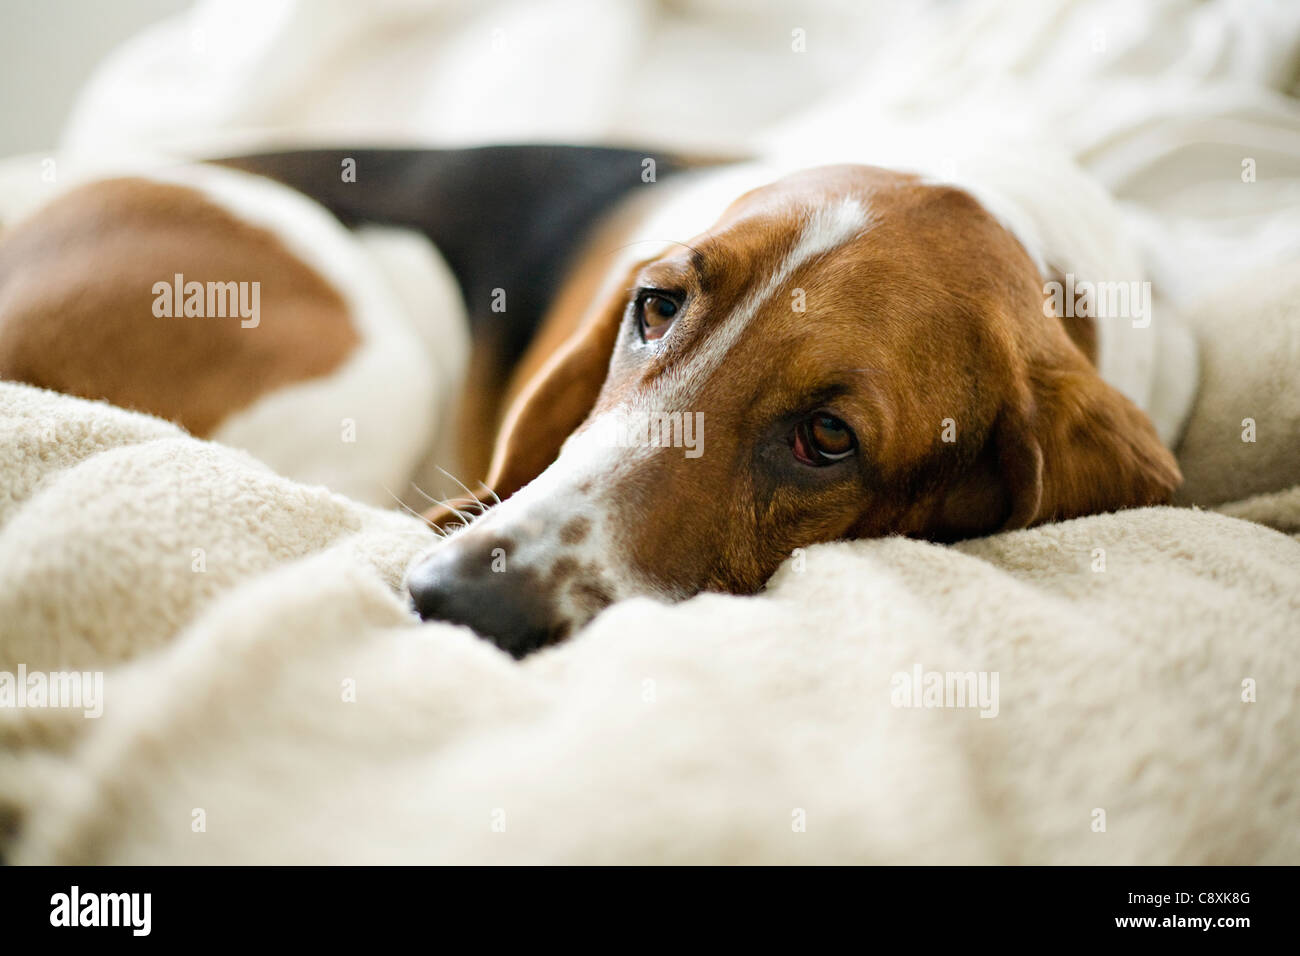 USA, Illinois, Washington, Bassett Hound lying on bed Stock Photo